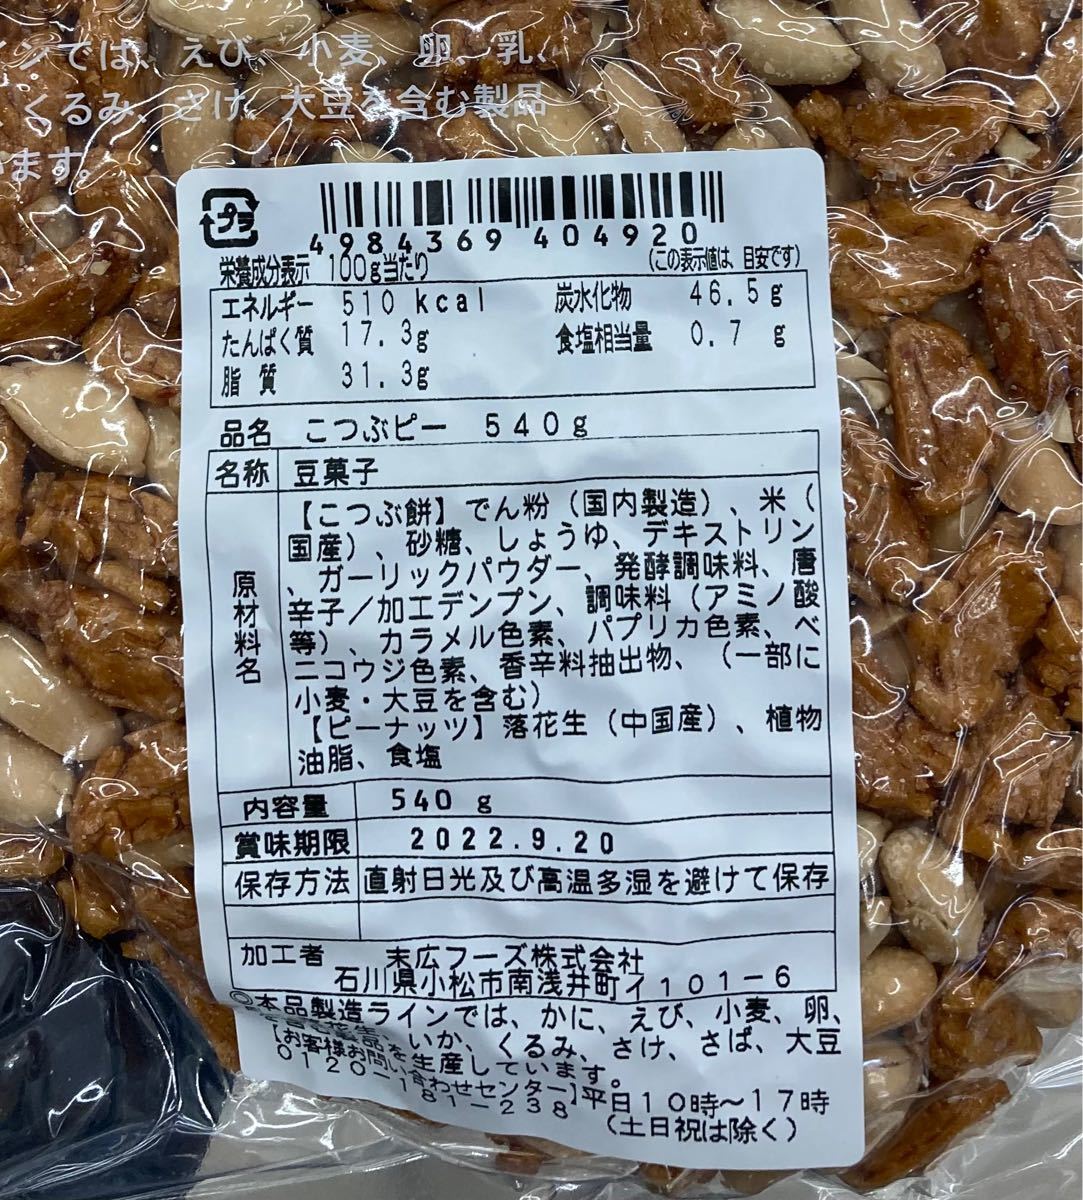 世界的に えびピーナッツ 1kg×3袋 業務用大袋 濃厚海老風味の落花生豆菓子 エビ豆 塩味 おつまみ おやつに